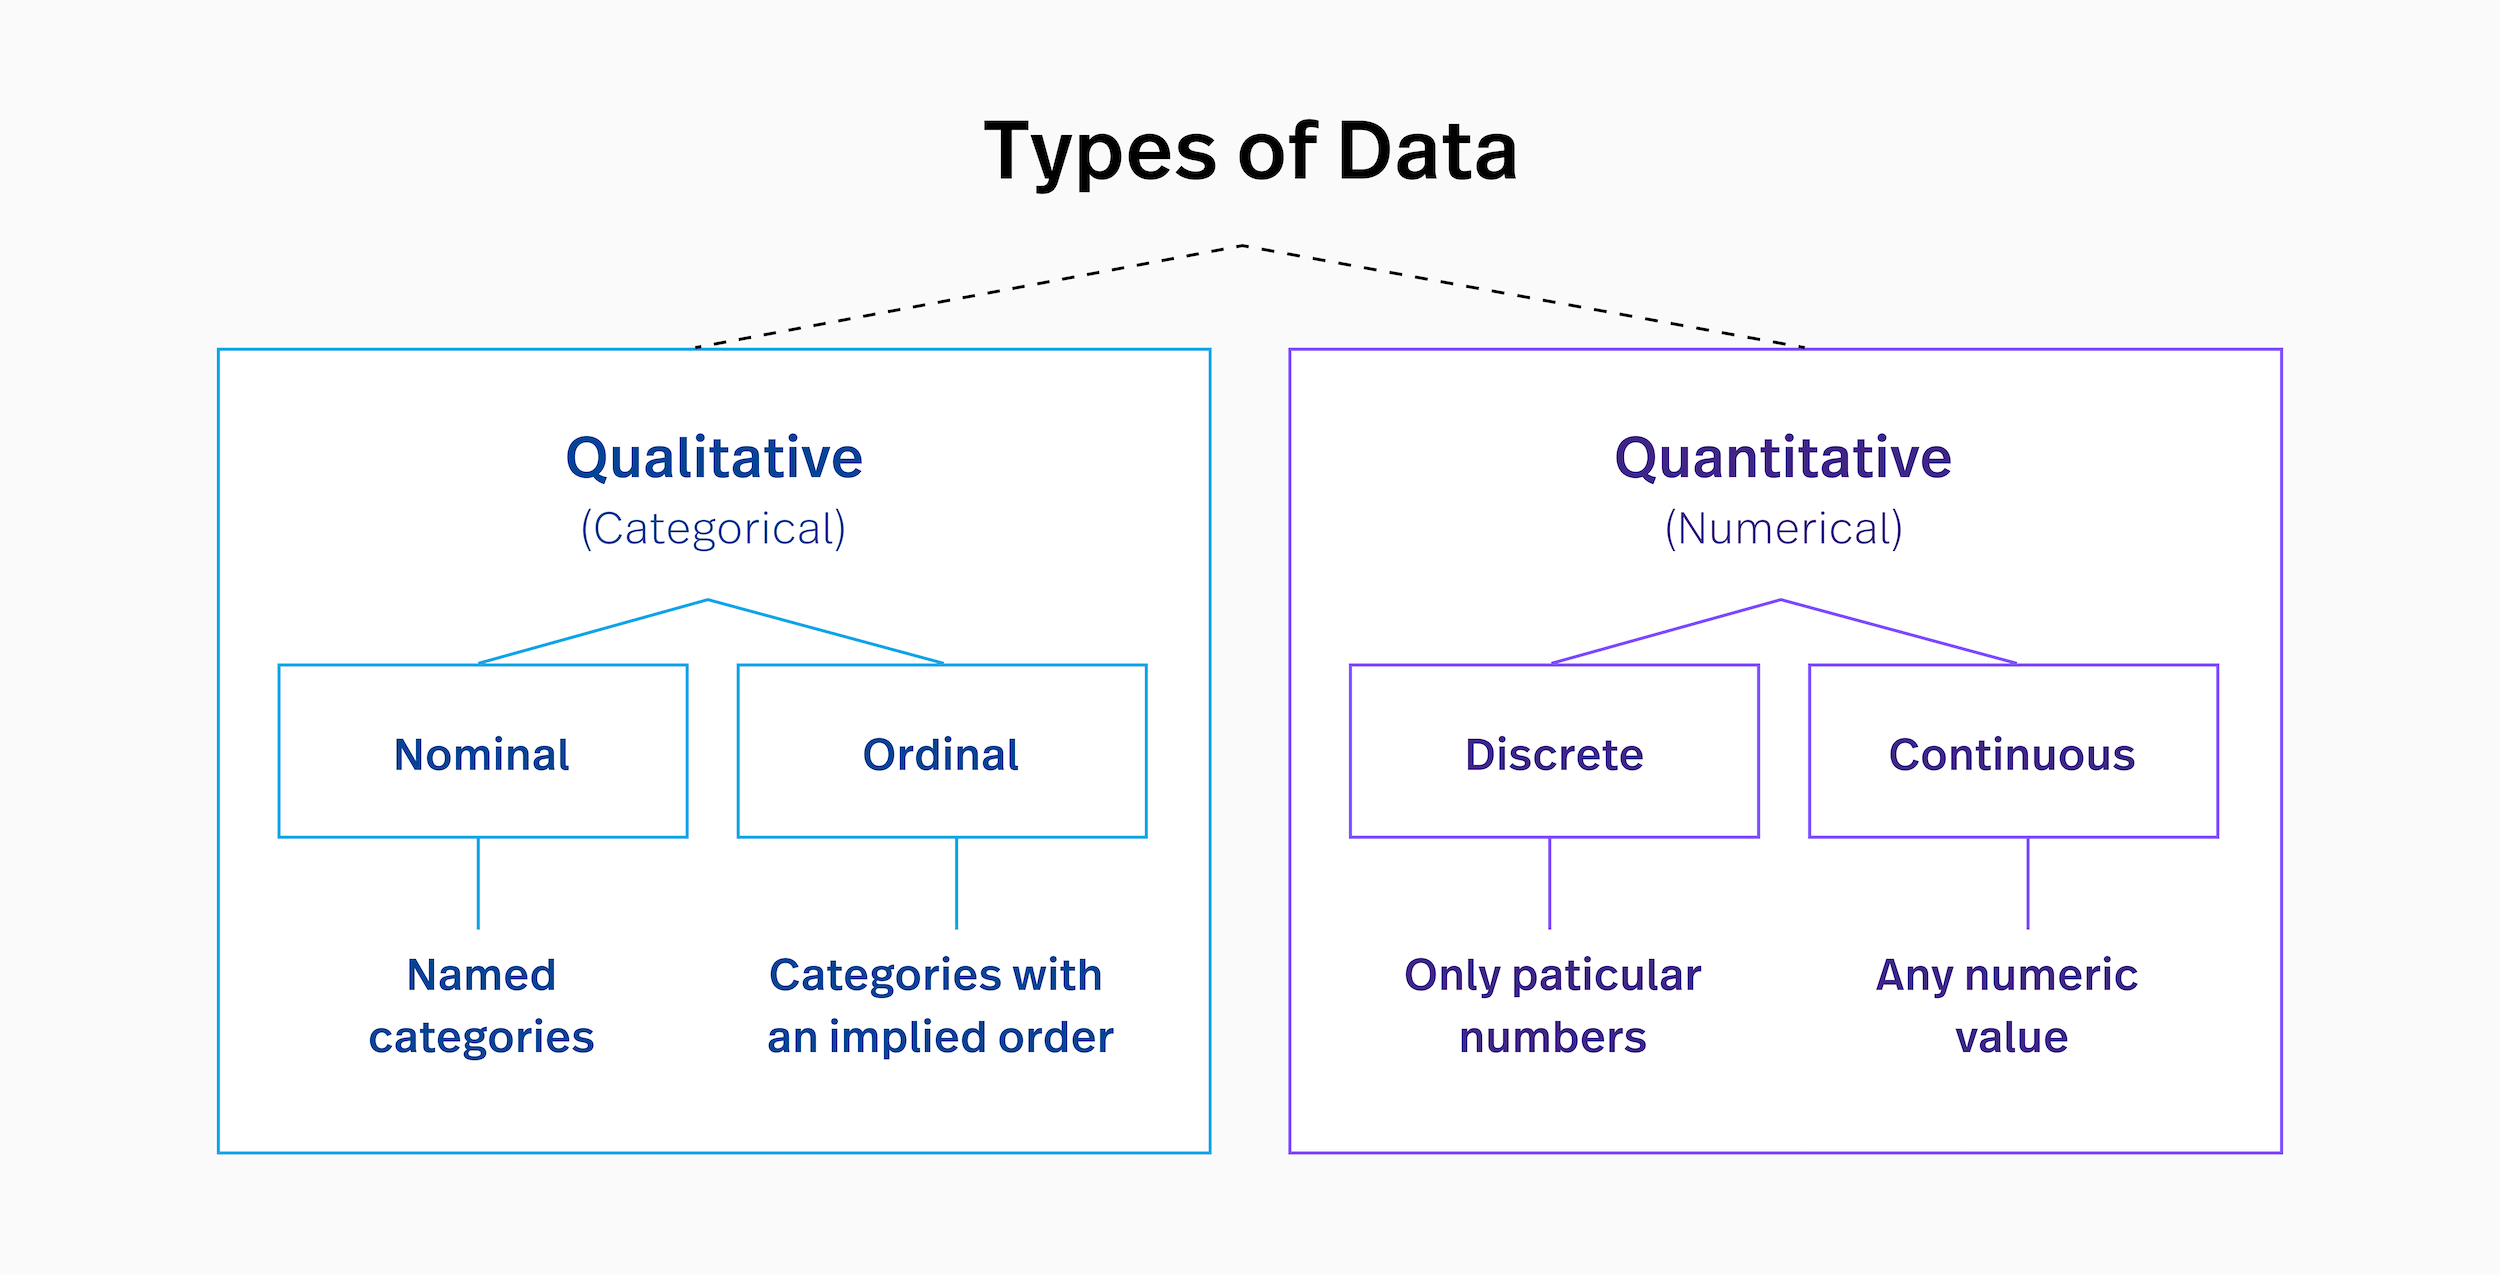 Qualitative vs quantitative data: types of data